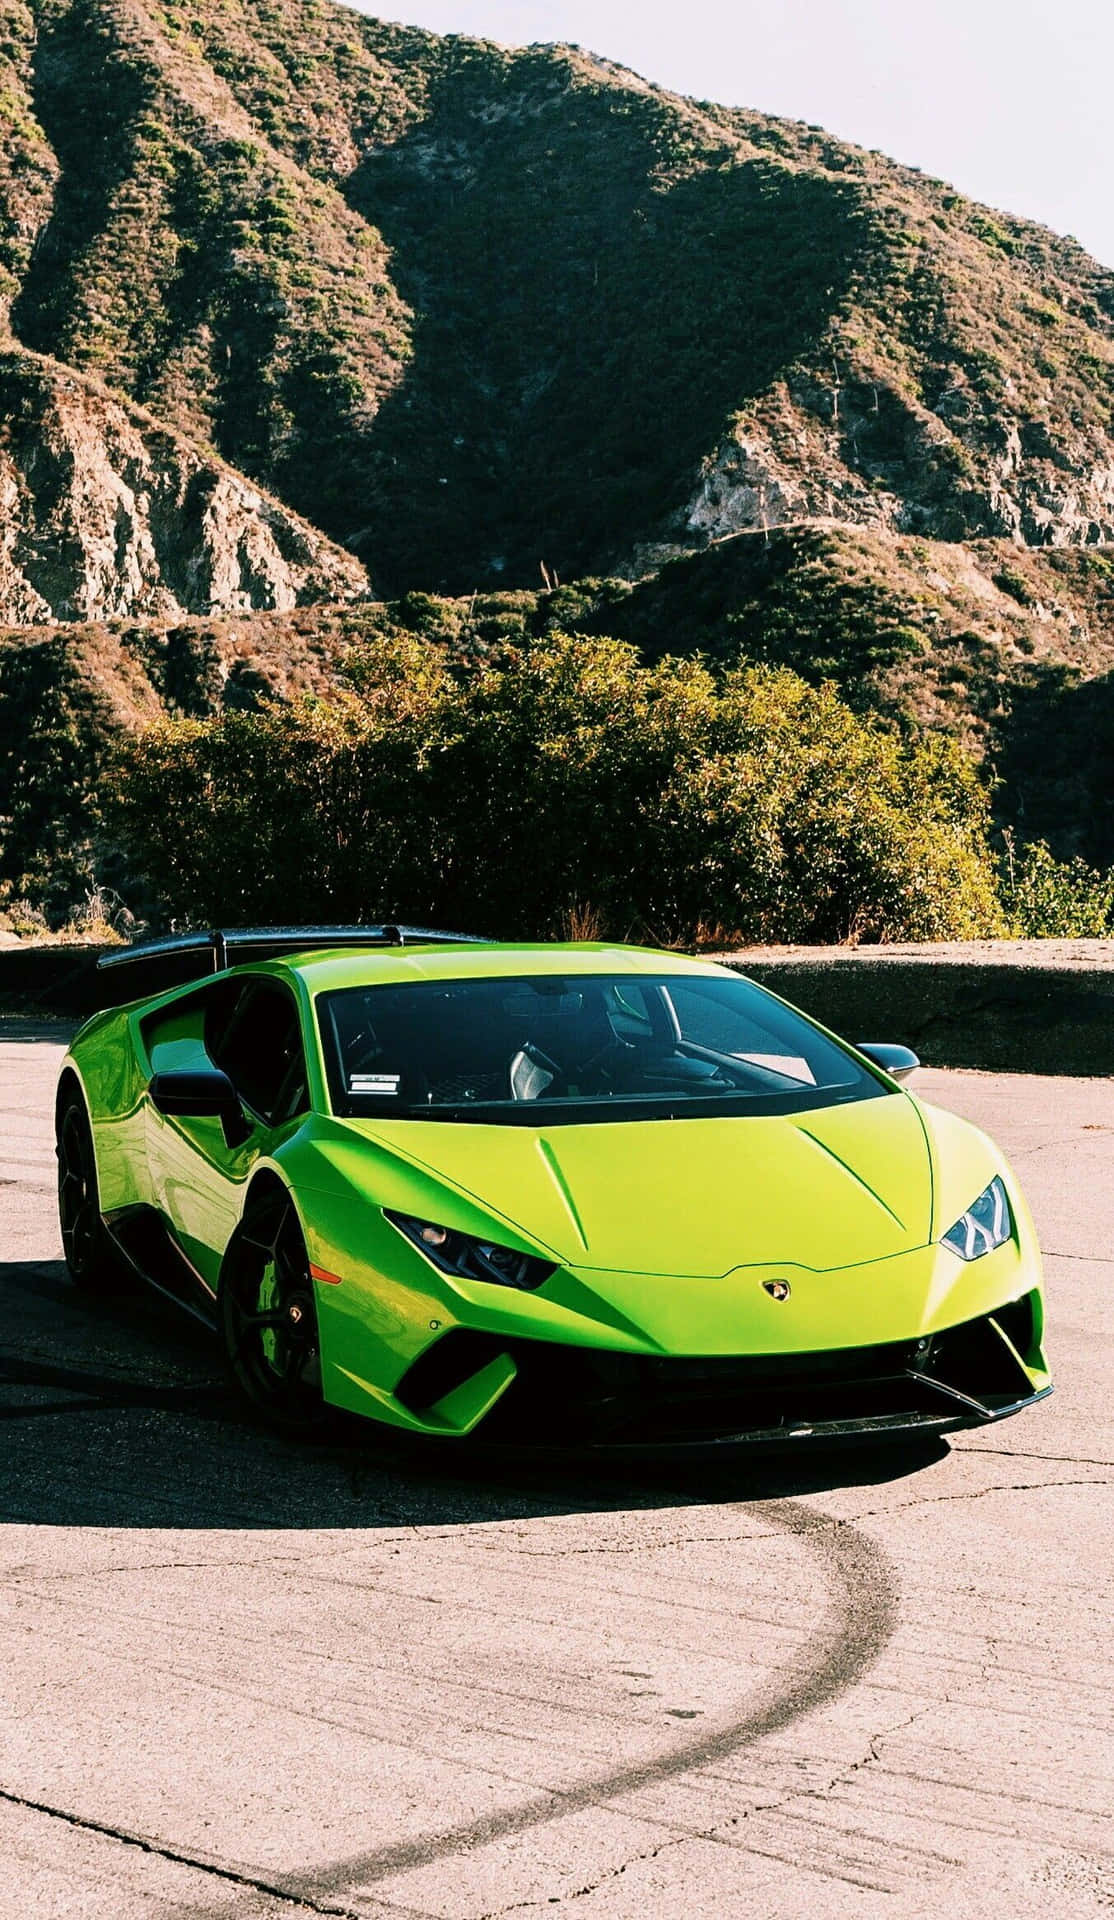 Accelerer dit stilspil med den blinkende grønne Lamborghini. Wallpaper